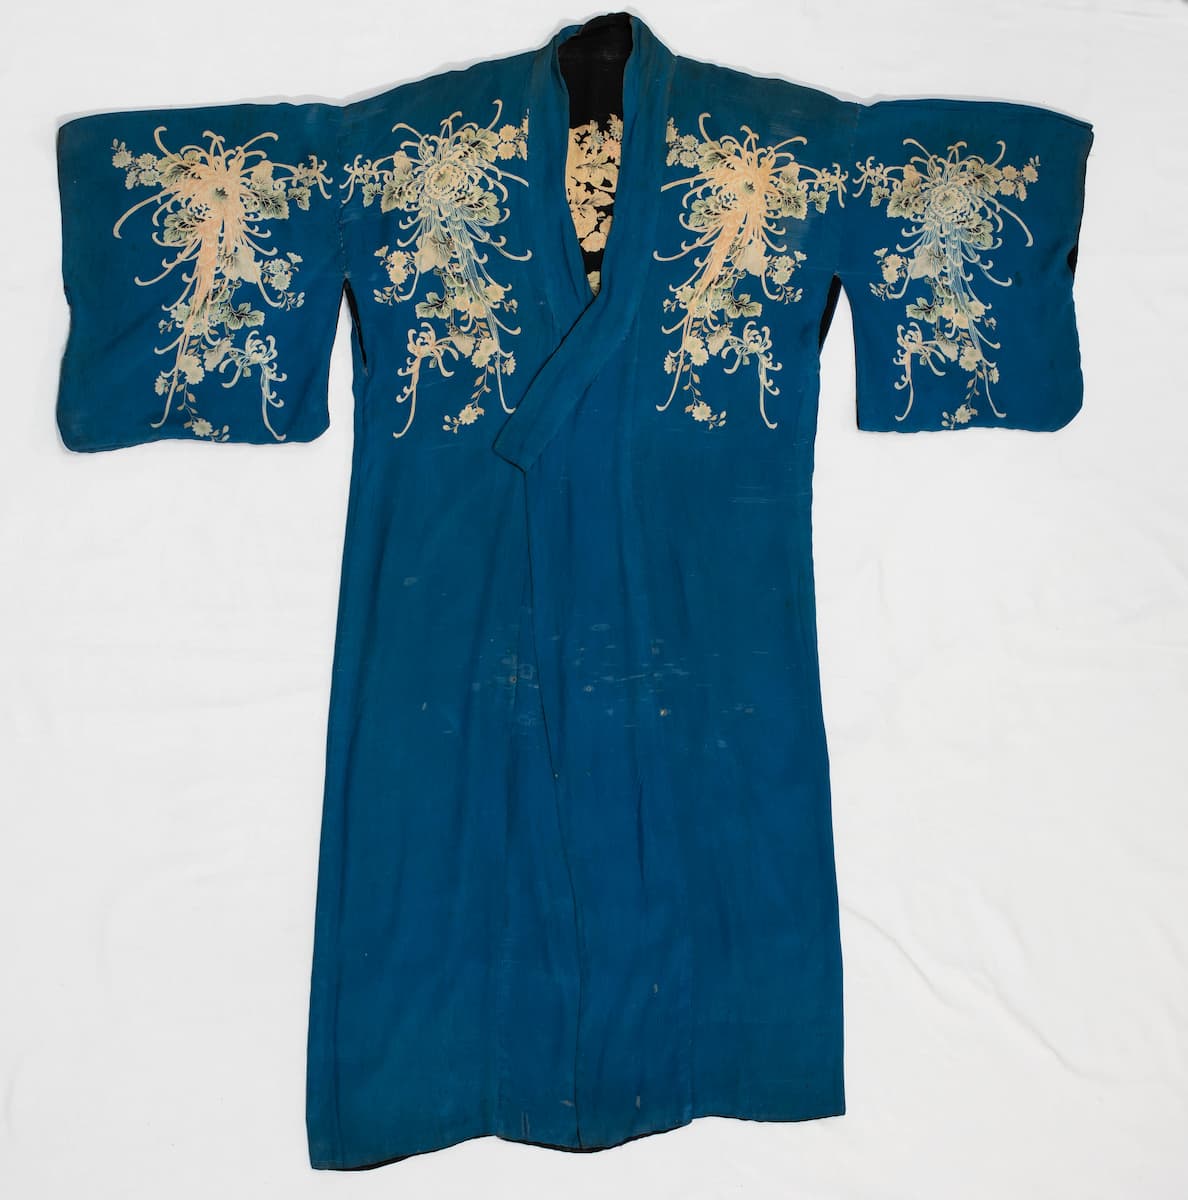 Quimono em seda azul e preta estampada com motivos florais; mangas amplas com abertura nas axilas (Antes). Seda, Japão. Foto: Victor Vasconcellos.